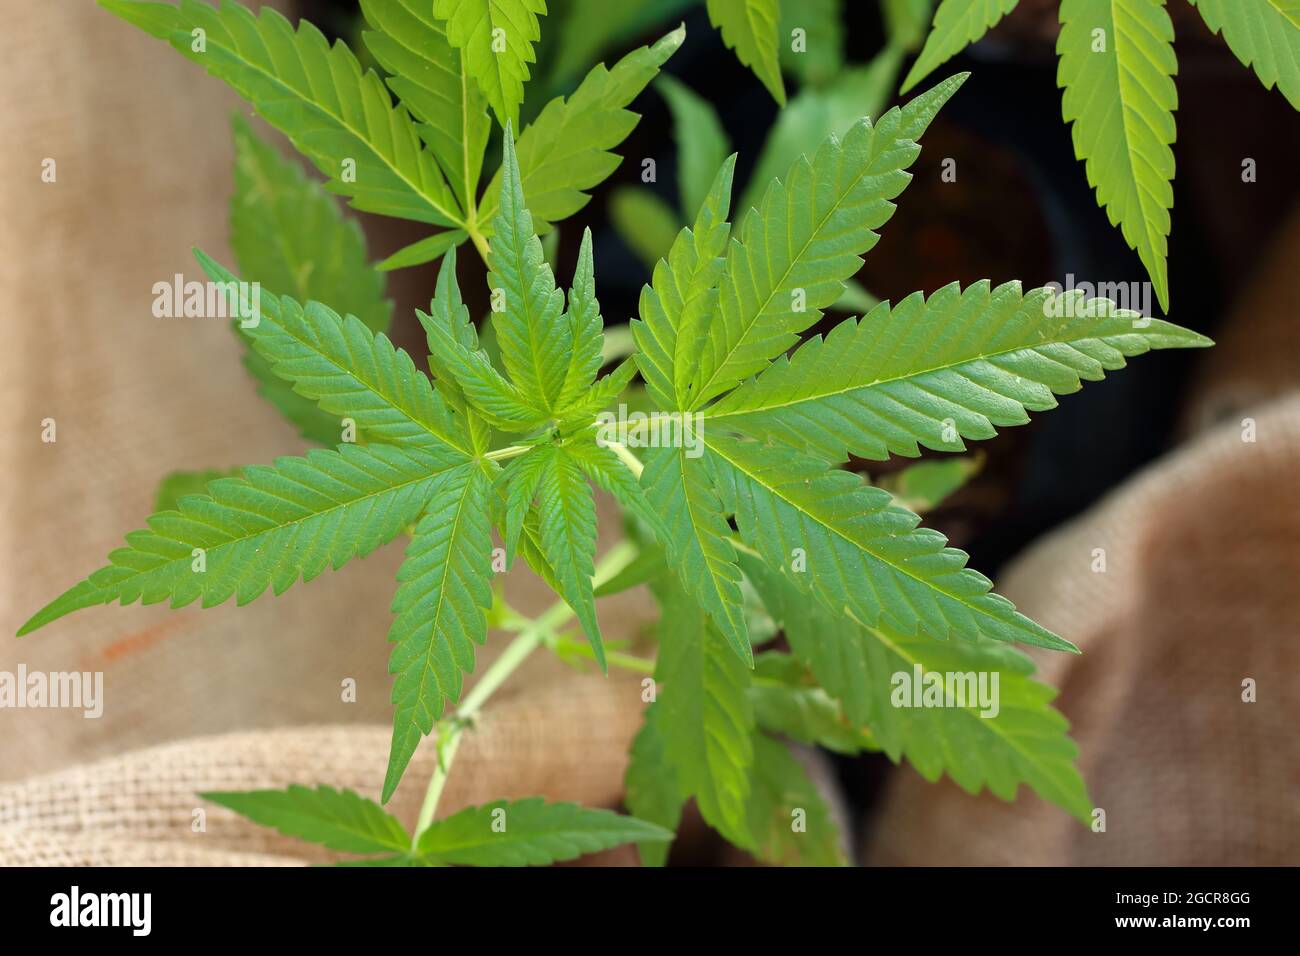 Draufsicht junger Hanf (Cannabis sativa) Baum, Hanfbaum, der in der Textilindustrie verwendet wird Stockfoto